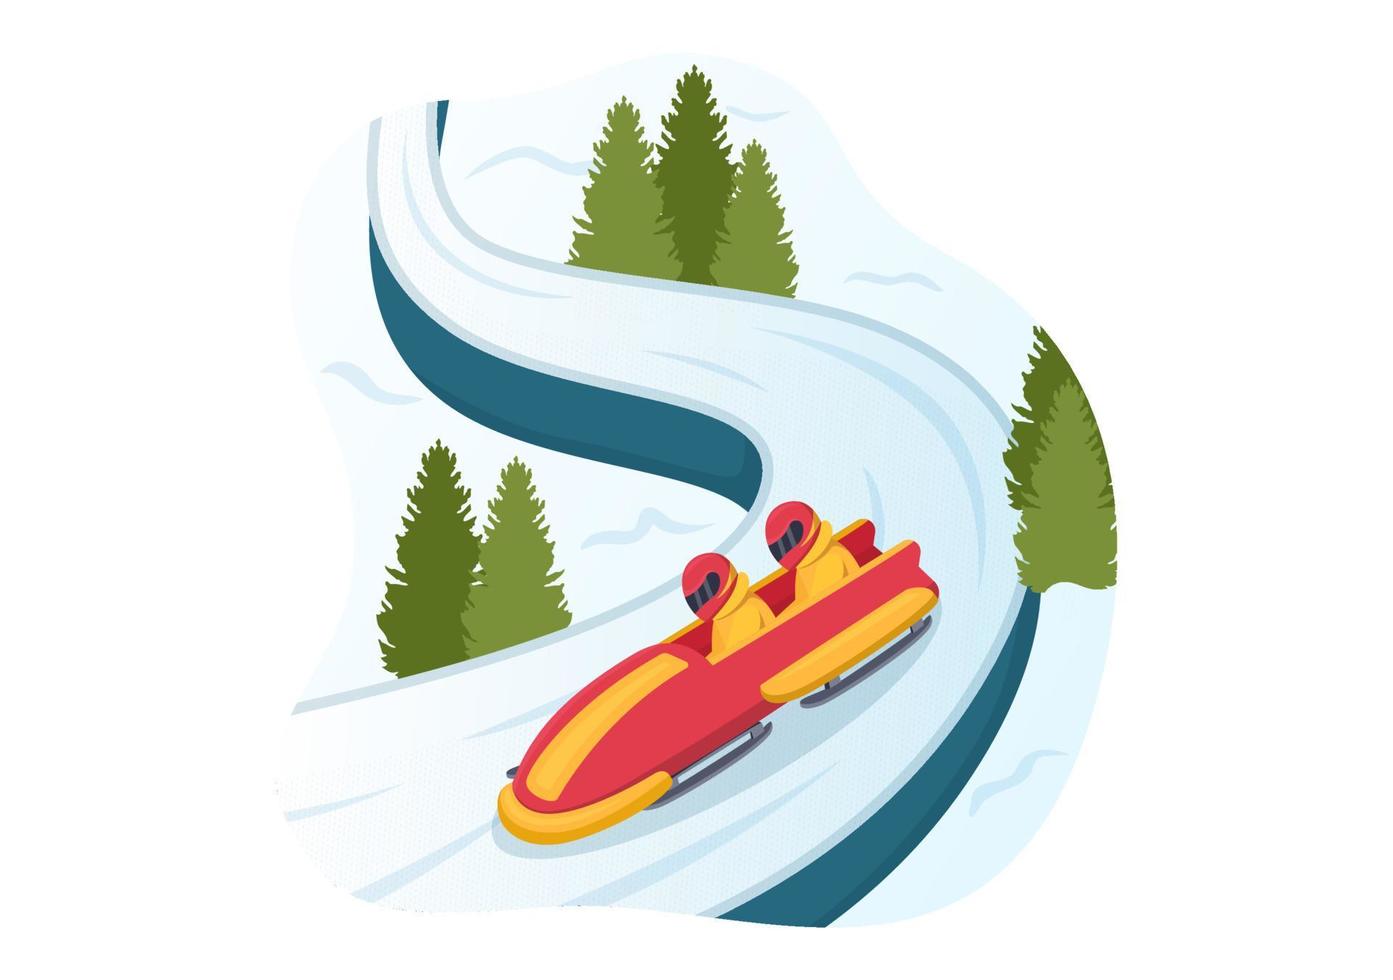 atleta montando trineo bobsleigh ilustración con nieve, hielo y pista de trineo para la competencia en actividades deportivas de invierno dibujos animados planos plantillas dibujadas a mano vector